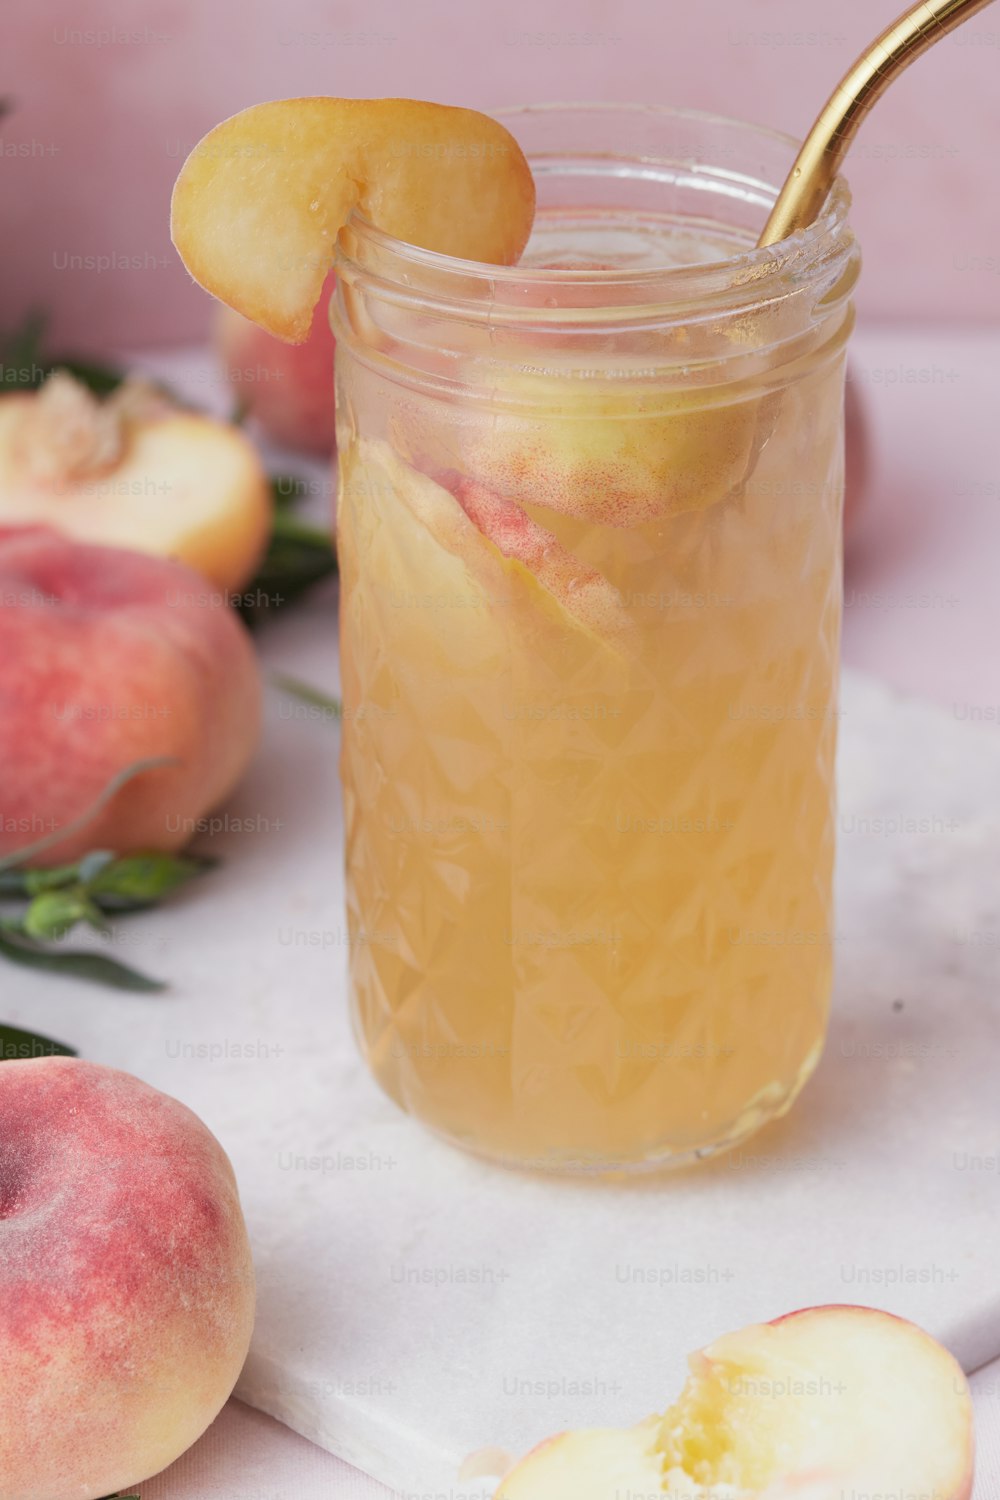 a jar of peach iced tea with a gold spoon